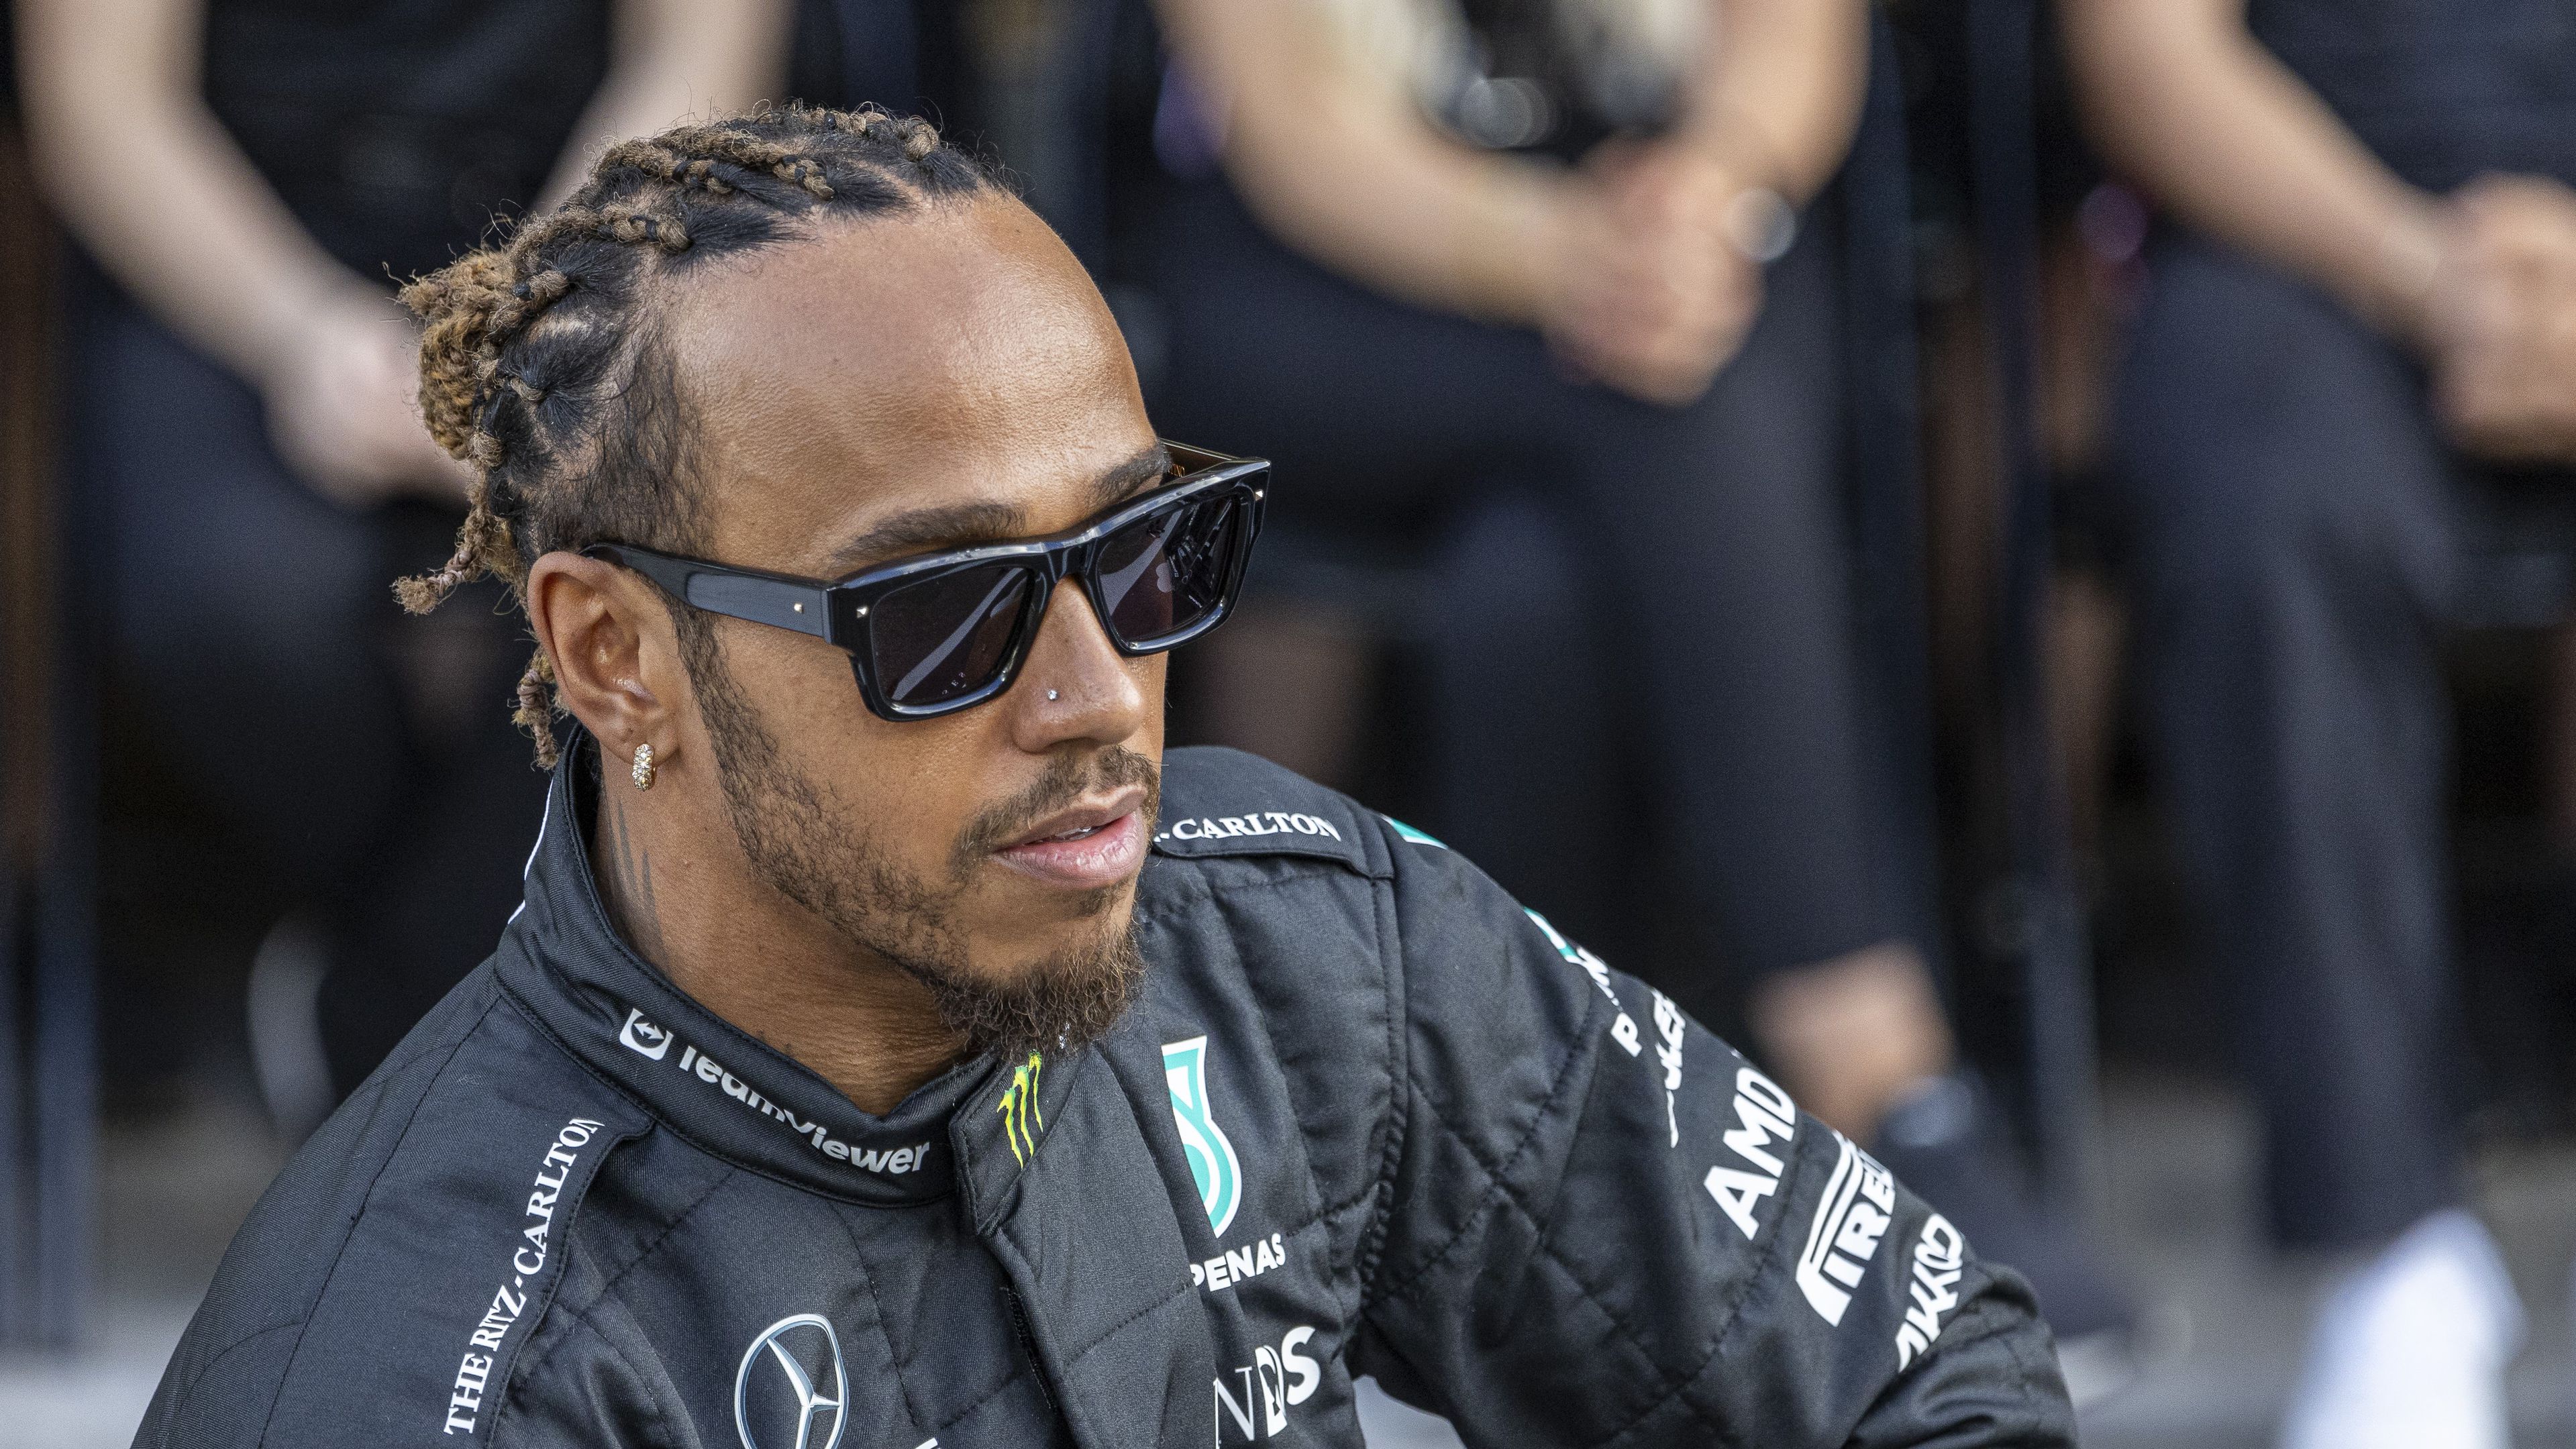 F1-hírek: Lewis Hamilton távozik a Mercedestől, a Ferrarihoz igazol – hivatalos